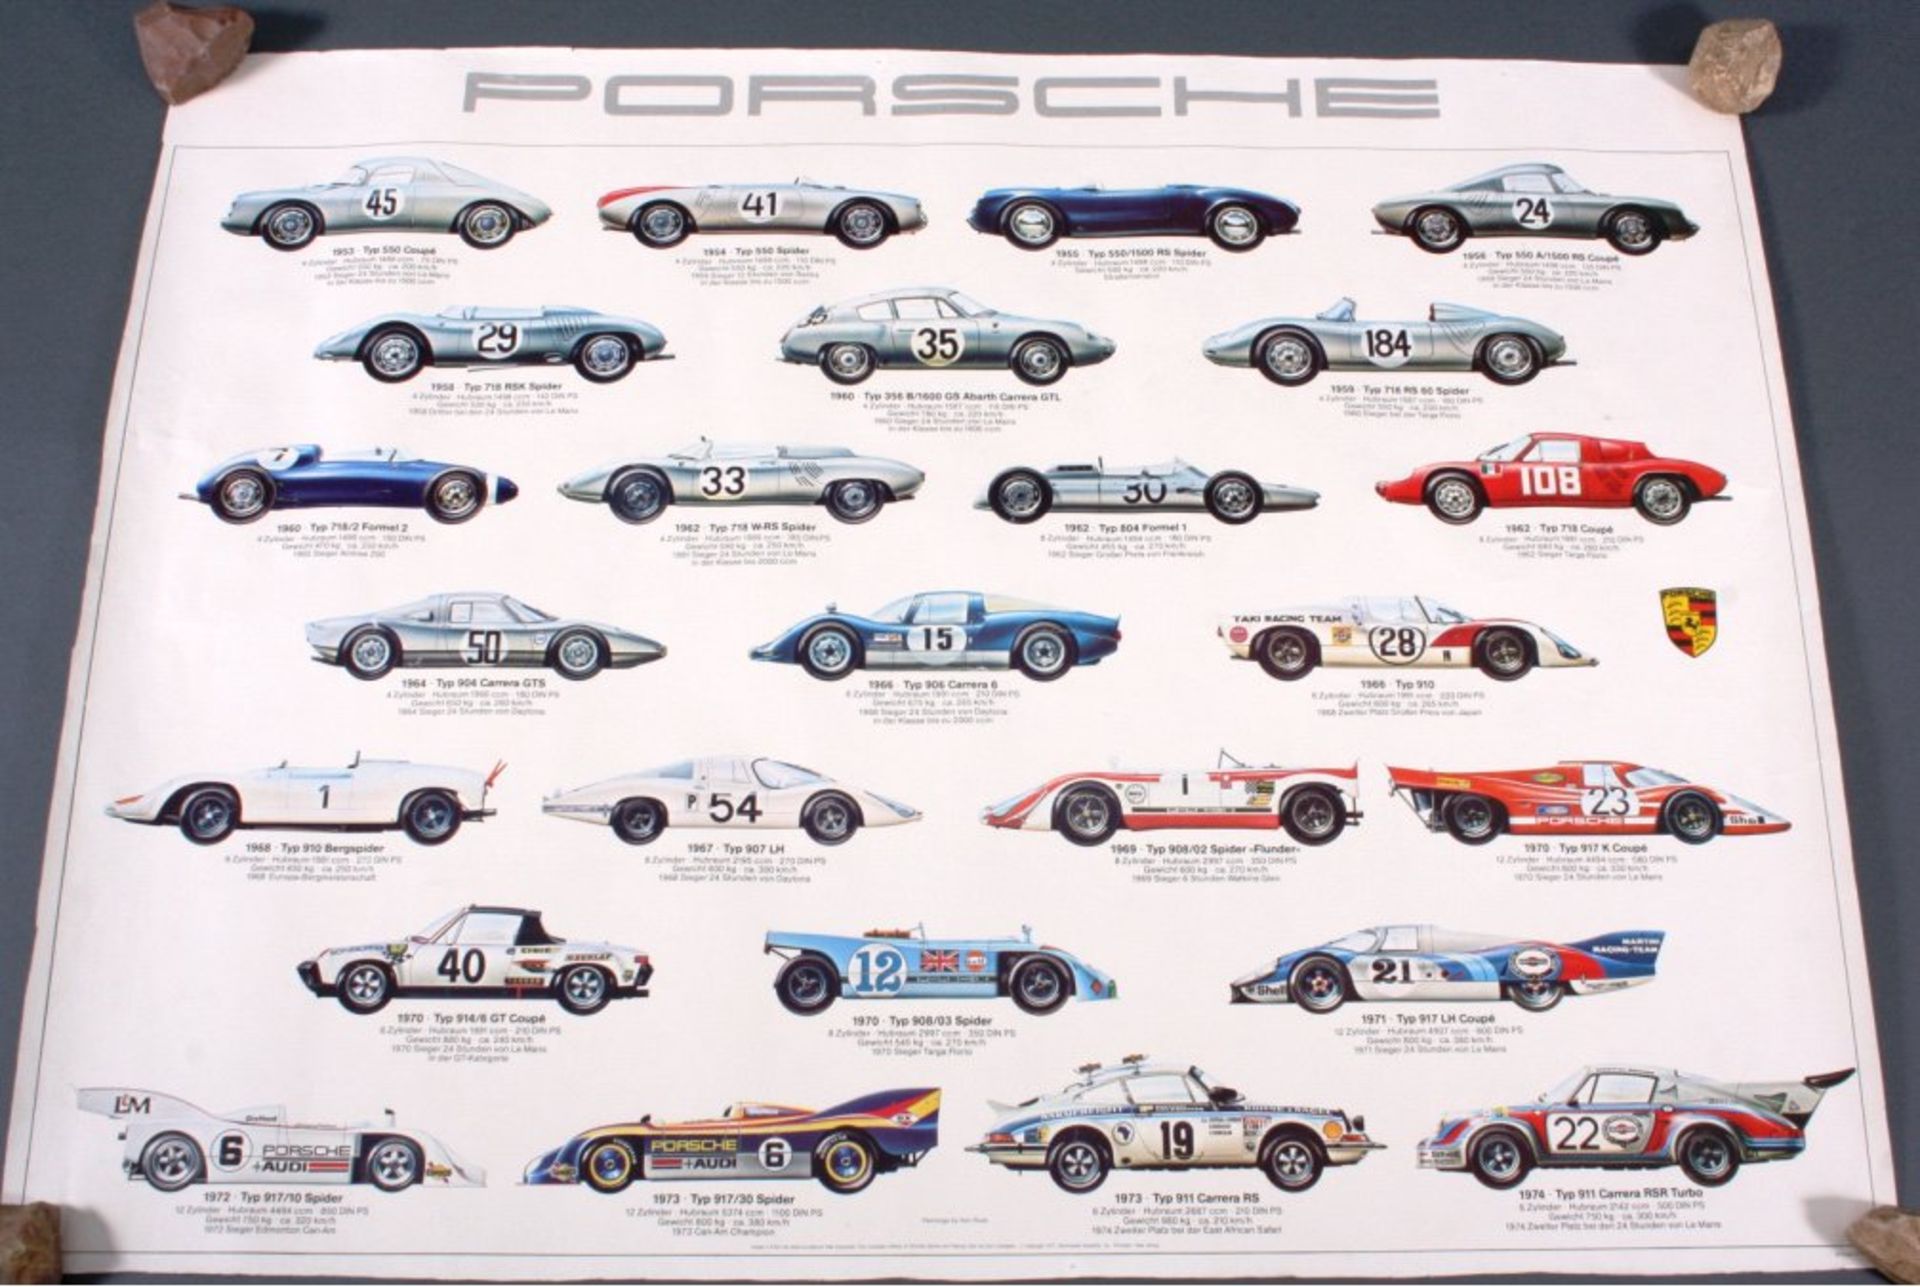 Poster mit der Porsche Modellchronik ab 1953 bis 1974ca. 68 x 90 cmMindestpreis: 20 EUR